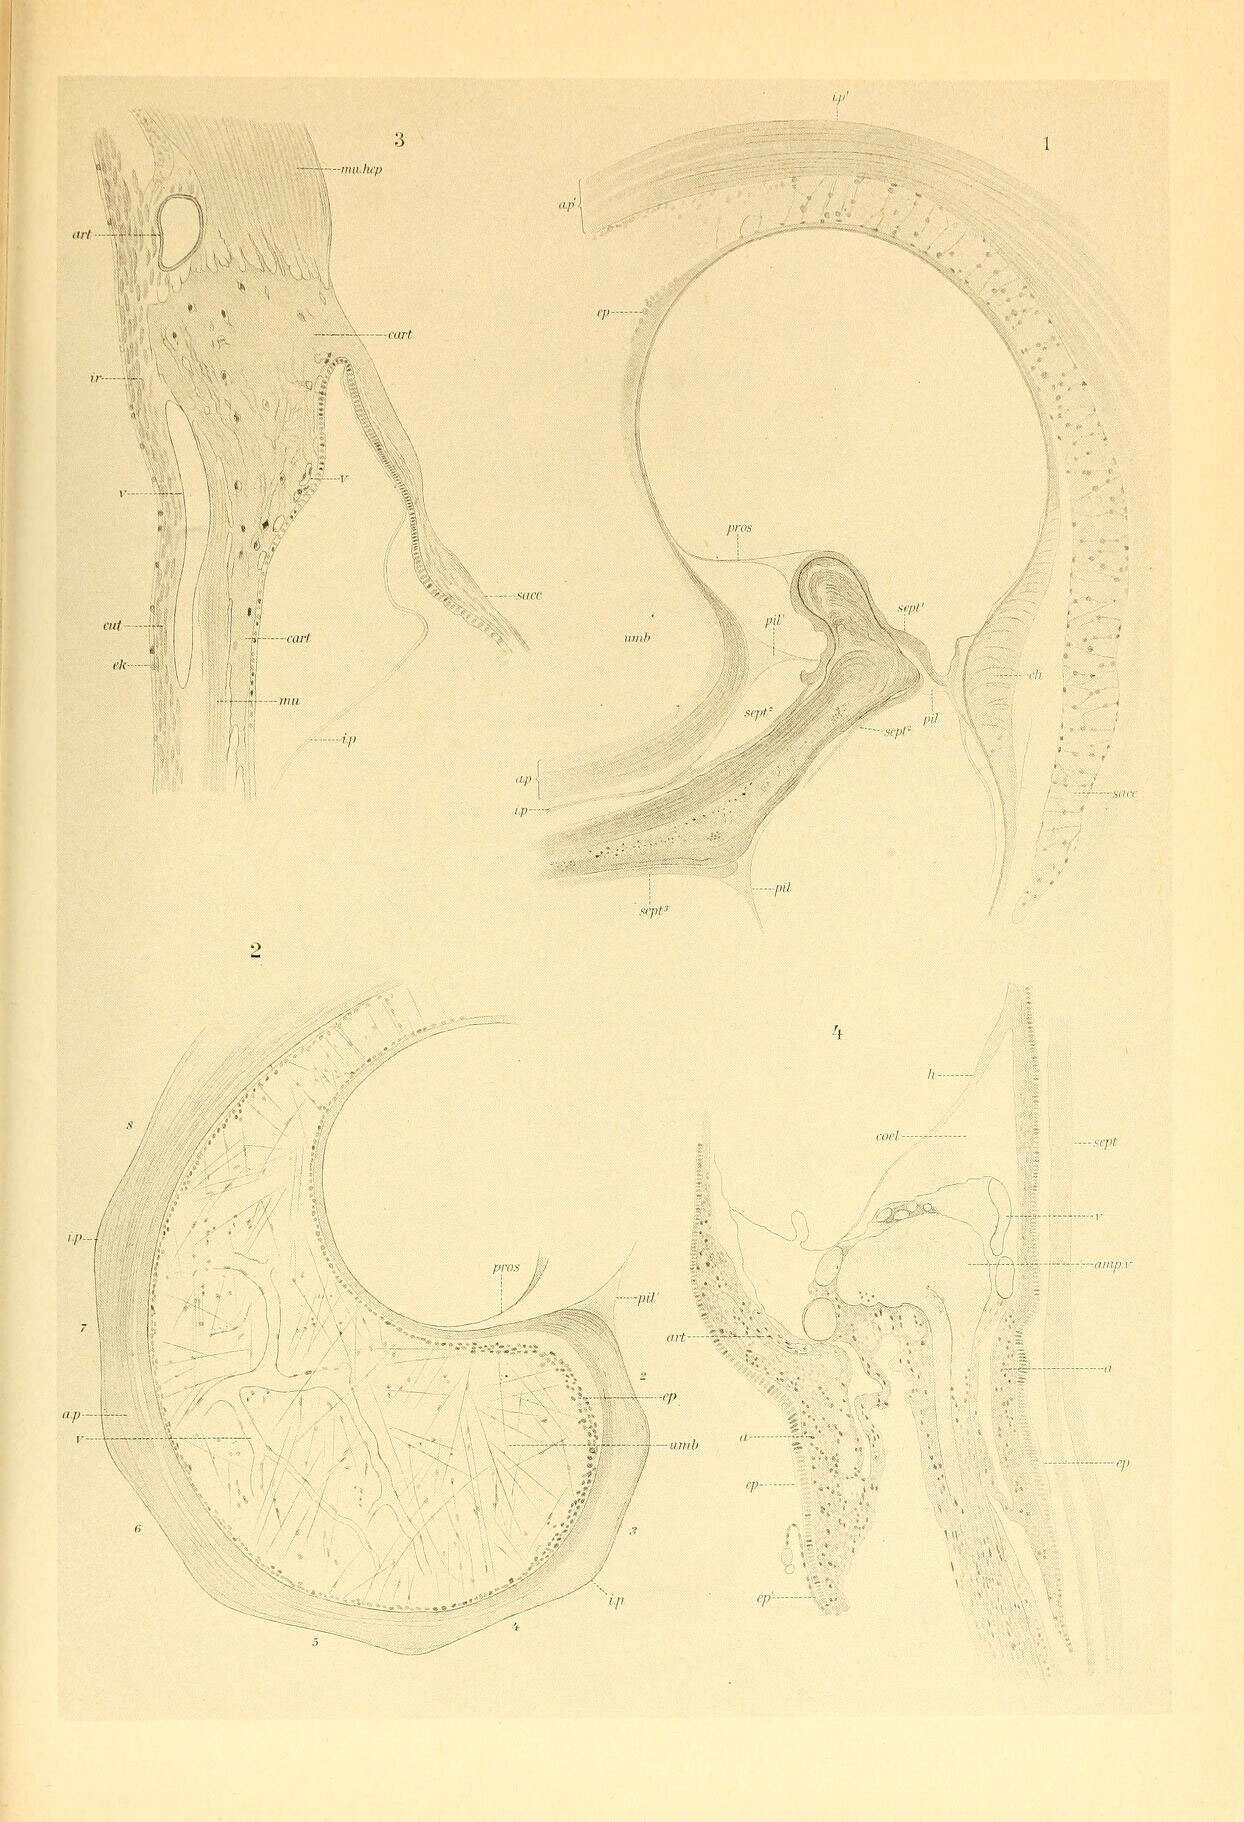 Image de Spiruloidea Rafinesque 1815